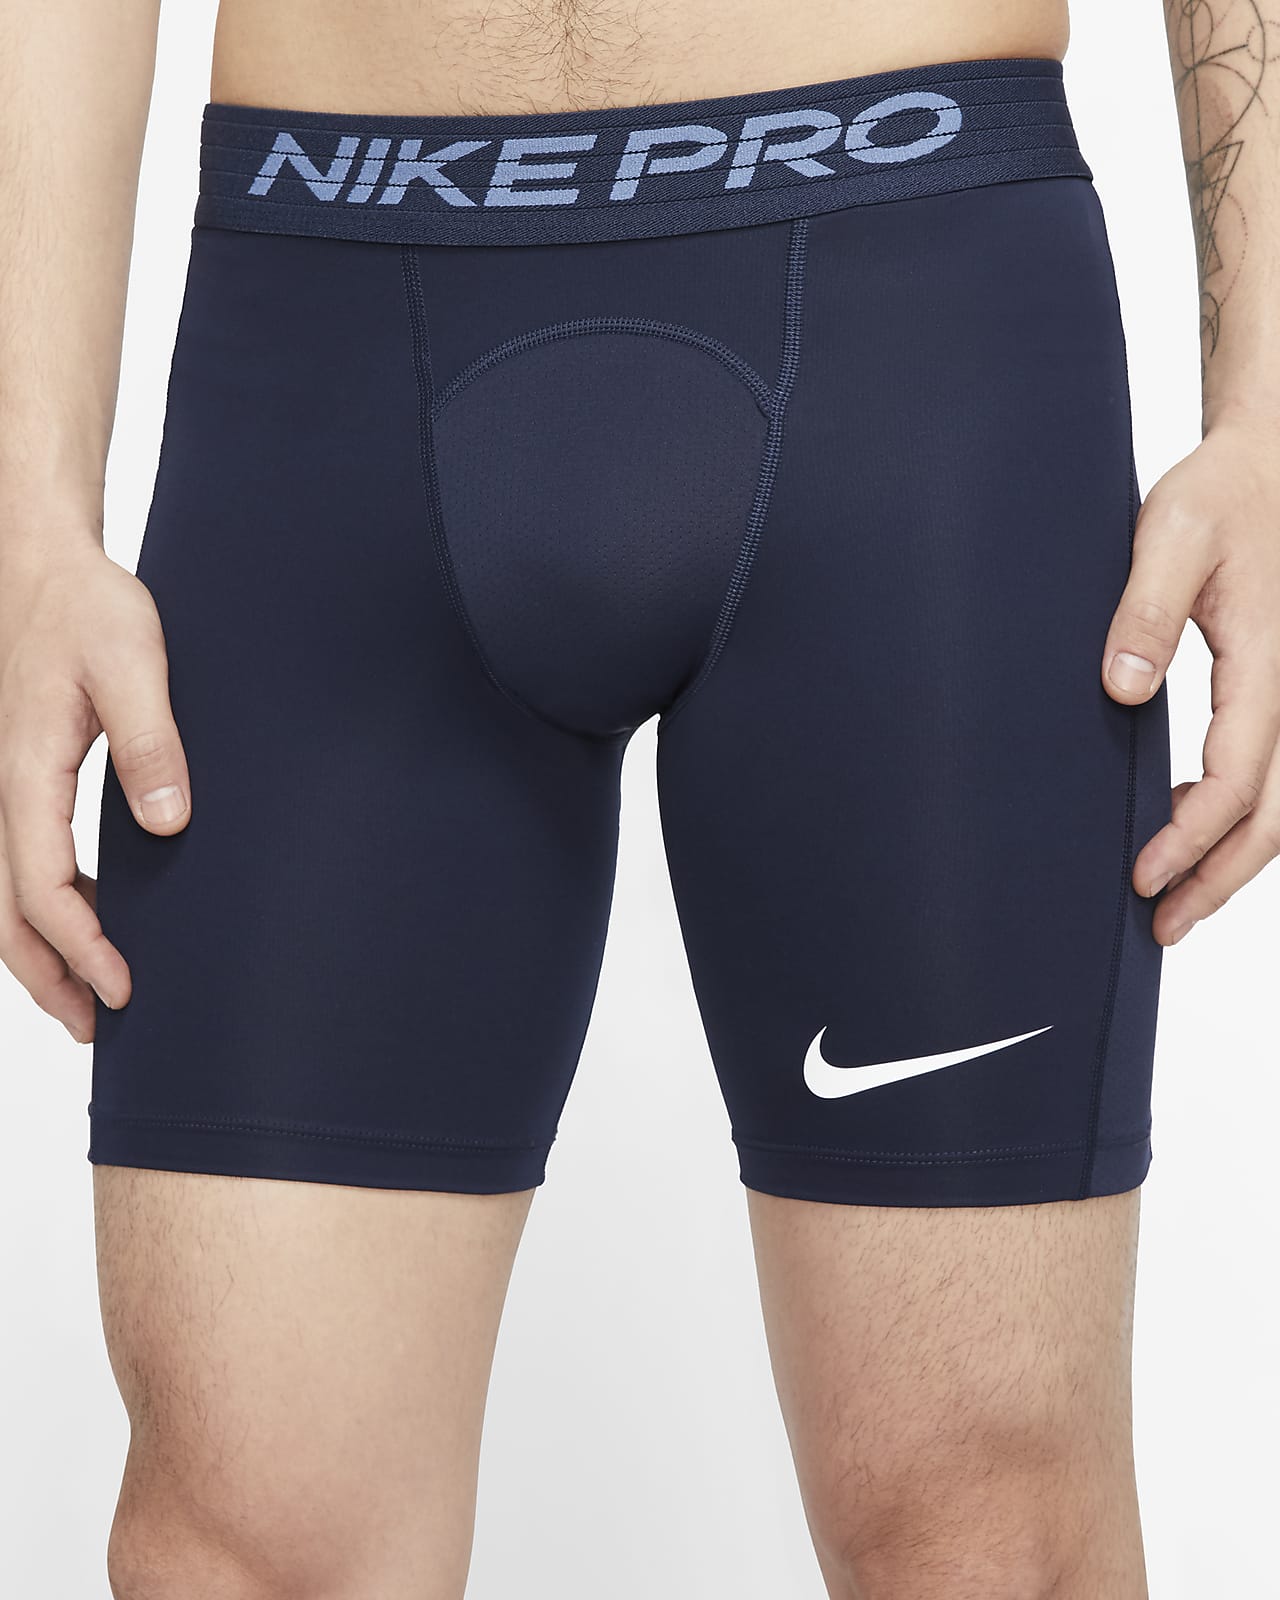 Nike Pro Men's Shorts. Nike SG